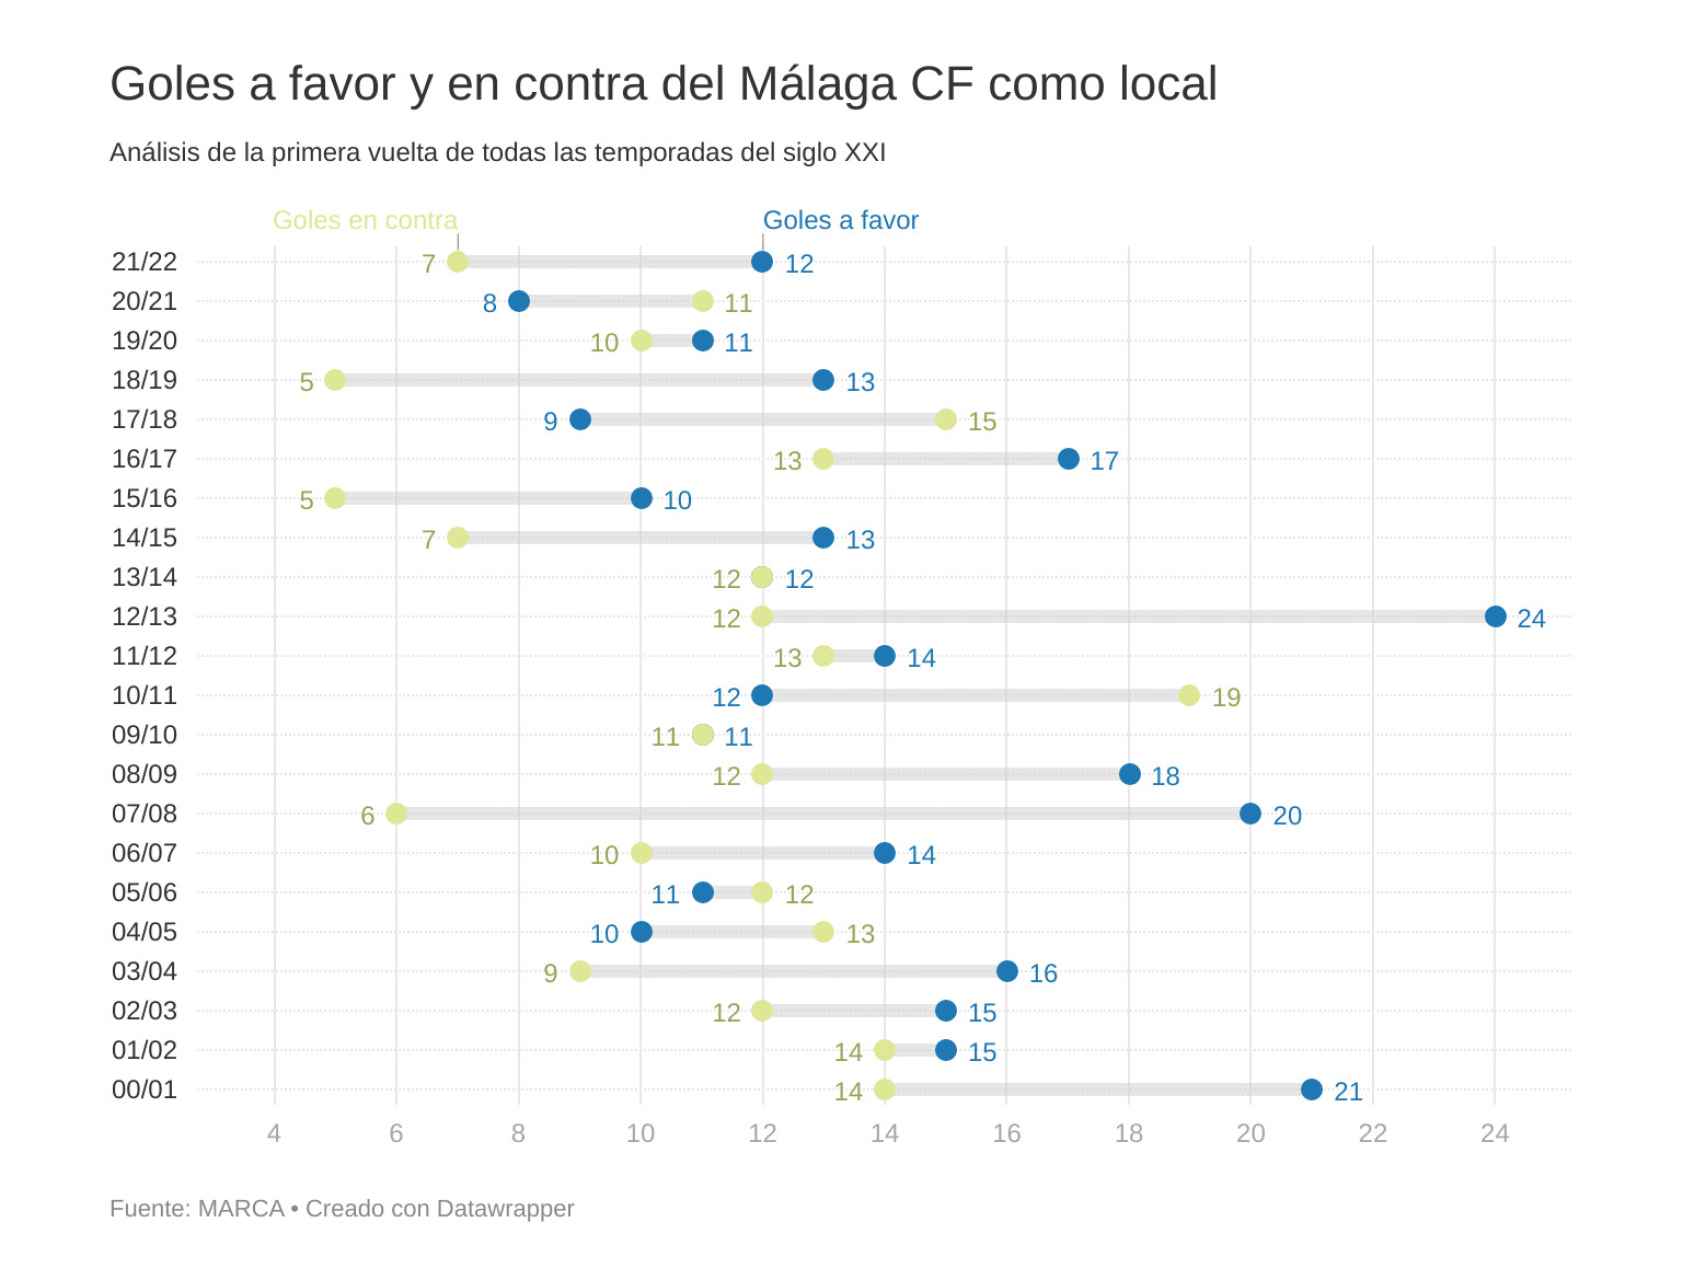 Análisis de los goles a favor y en contra del Málaga CF como local en la primera vuelta.